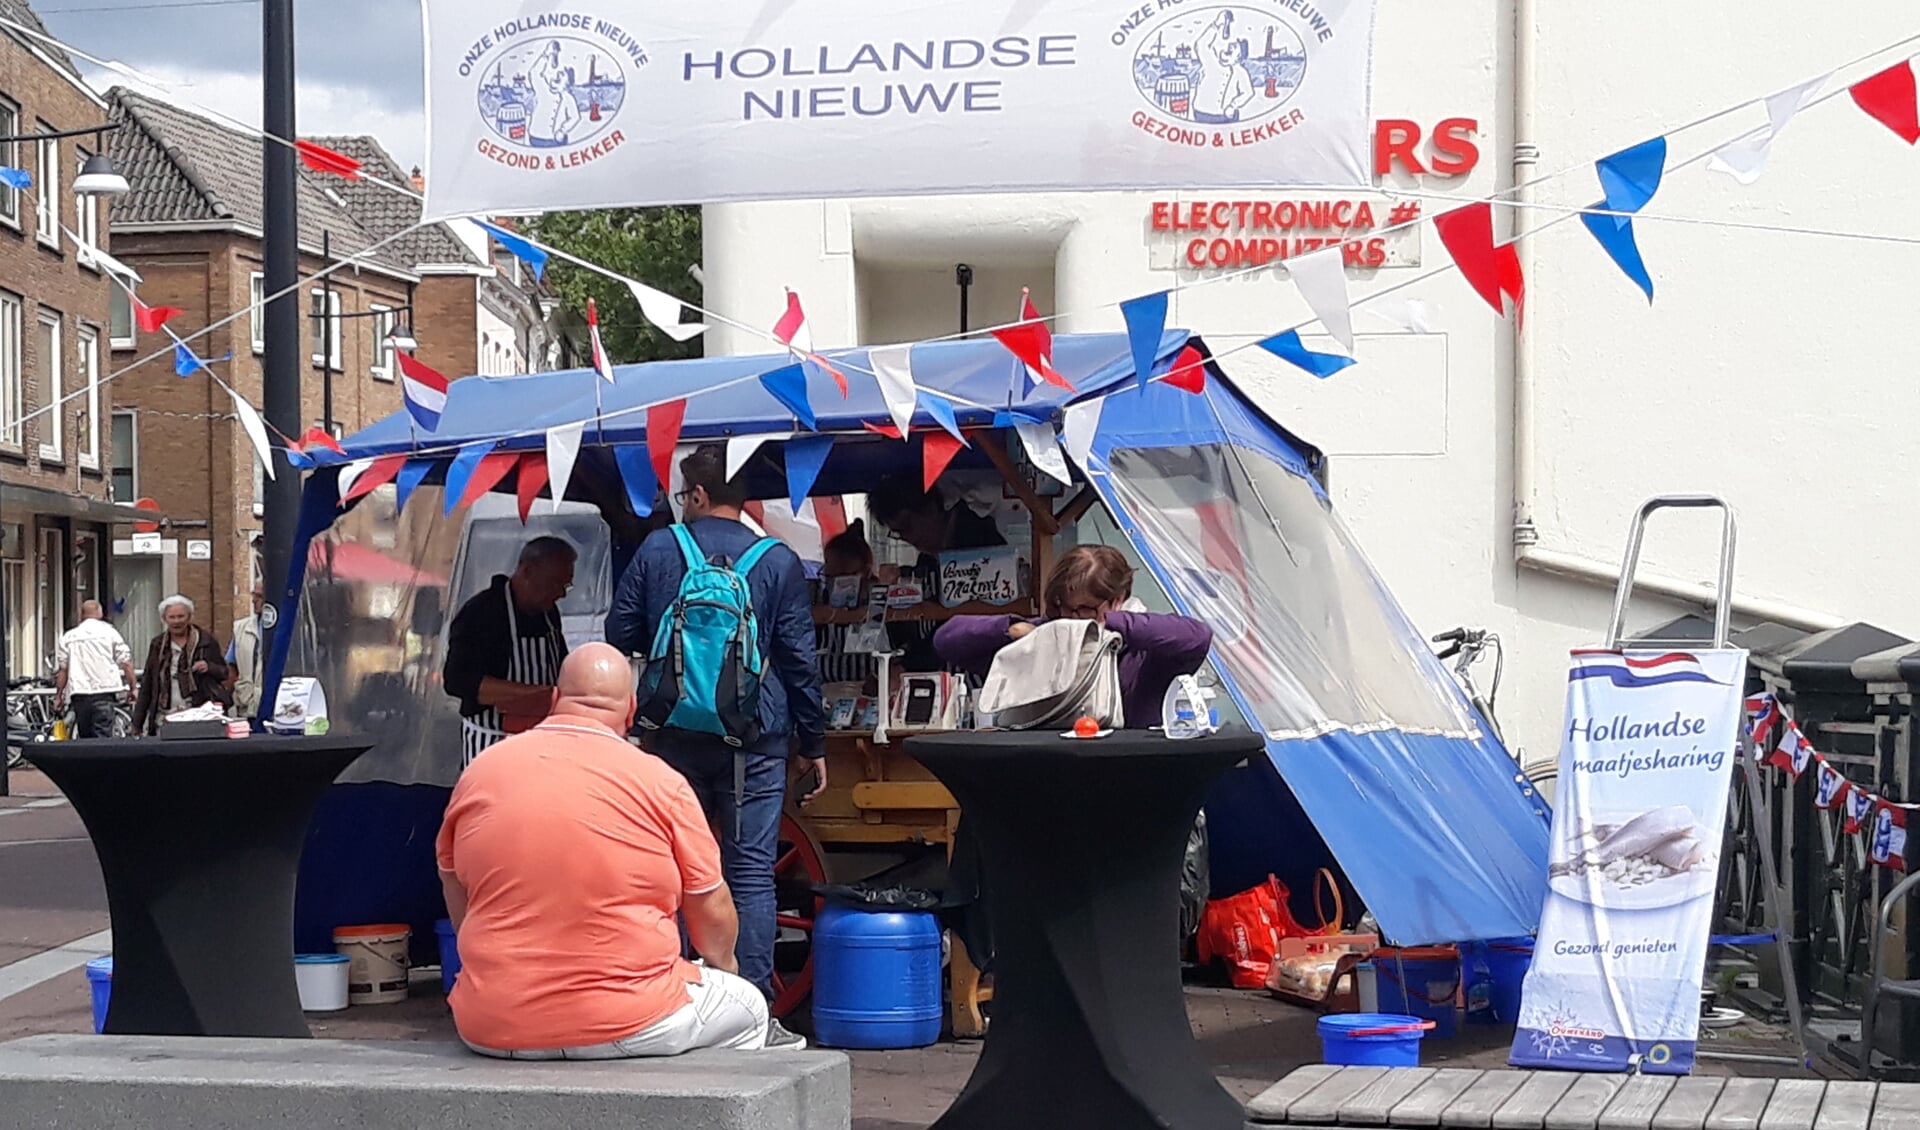 Hollandse nieuwe haring proeven bij de versierde haringkar van Hoekstra. Foto: PR